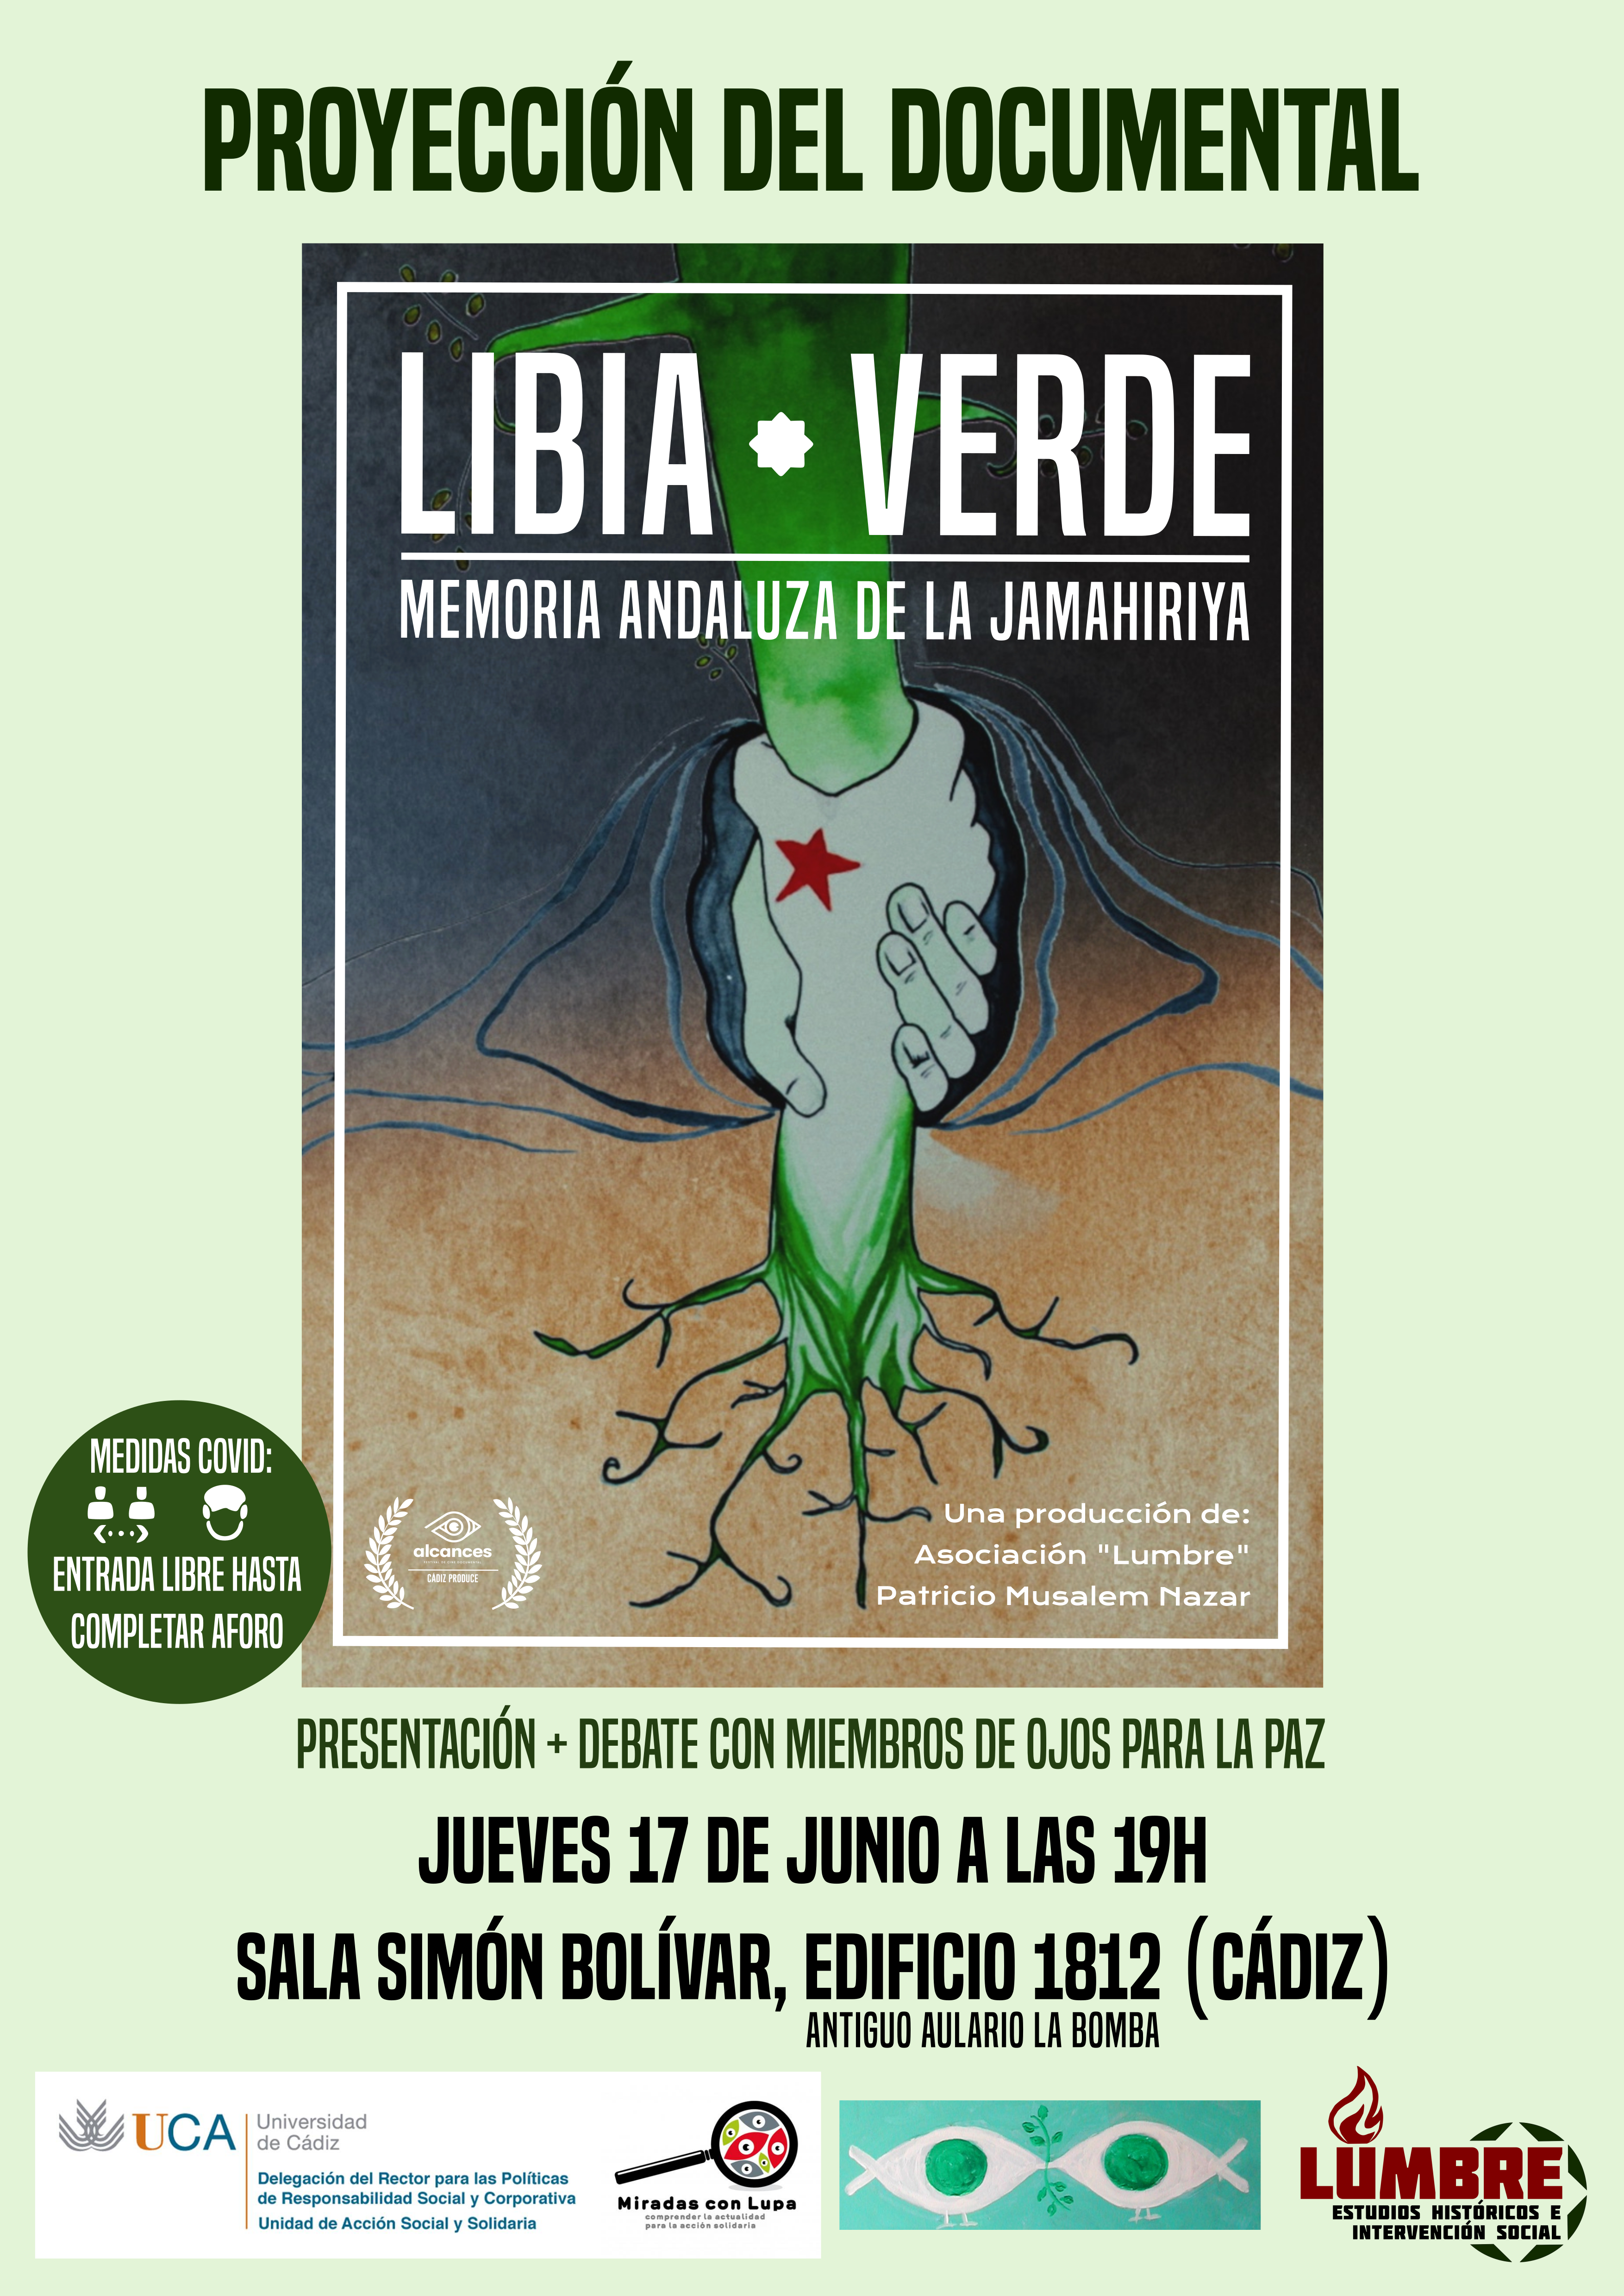 17 de junio. 19h. Proyección del documental: “Libia Verde. Memoria andaluza de la Jamahiriya”. Campus de Cádiz